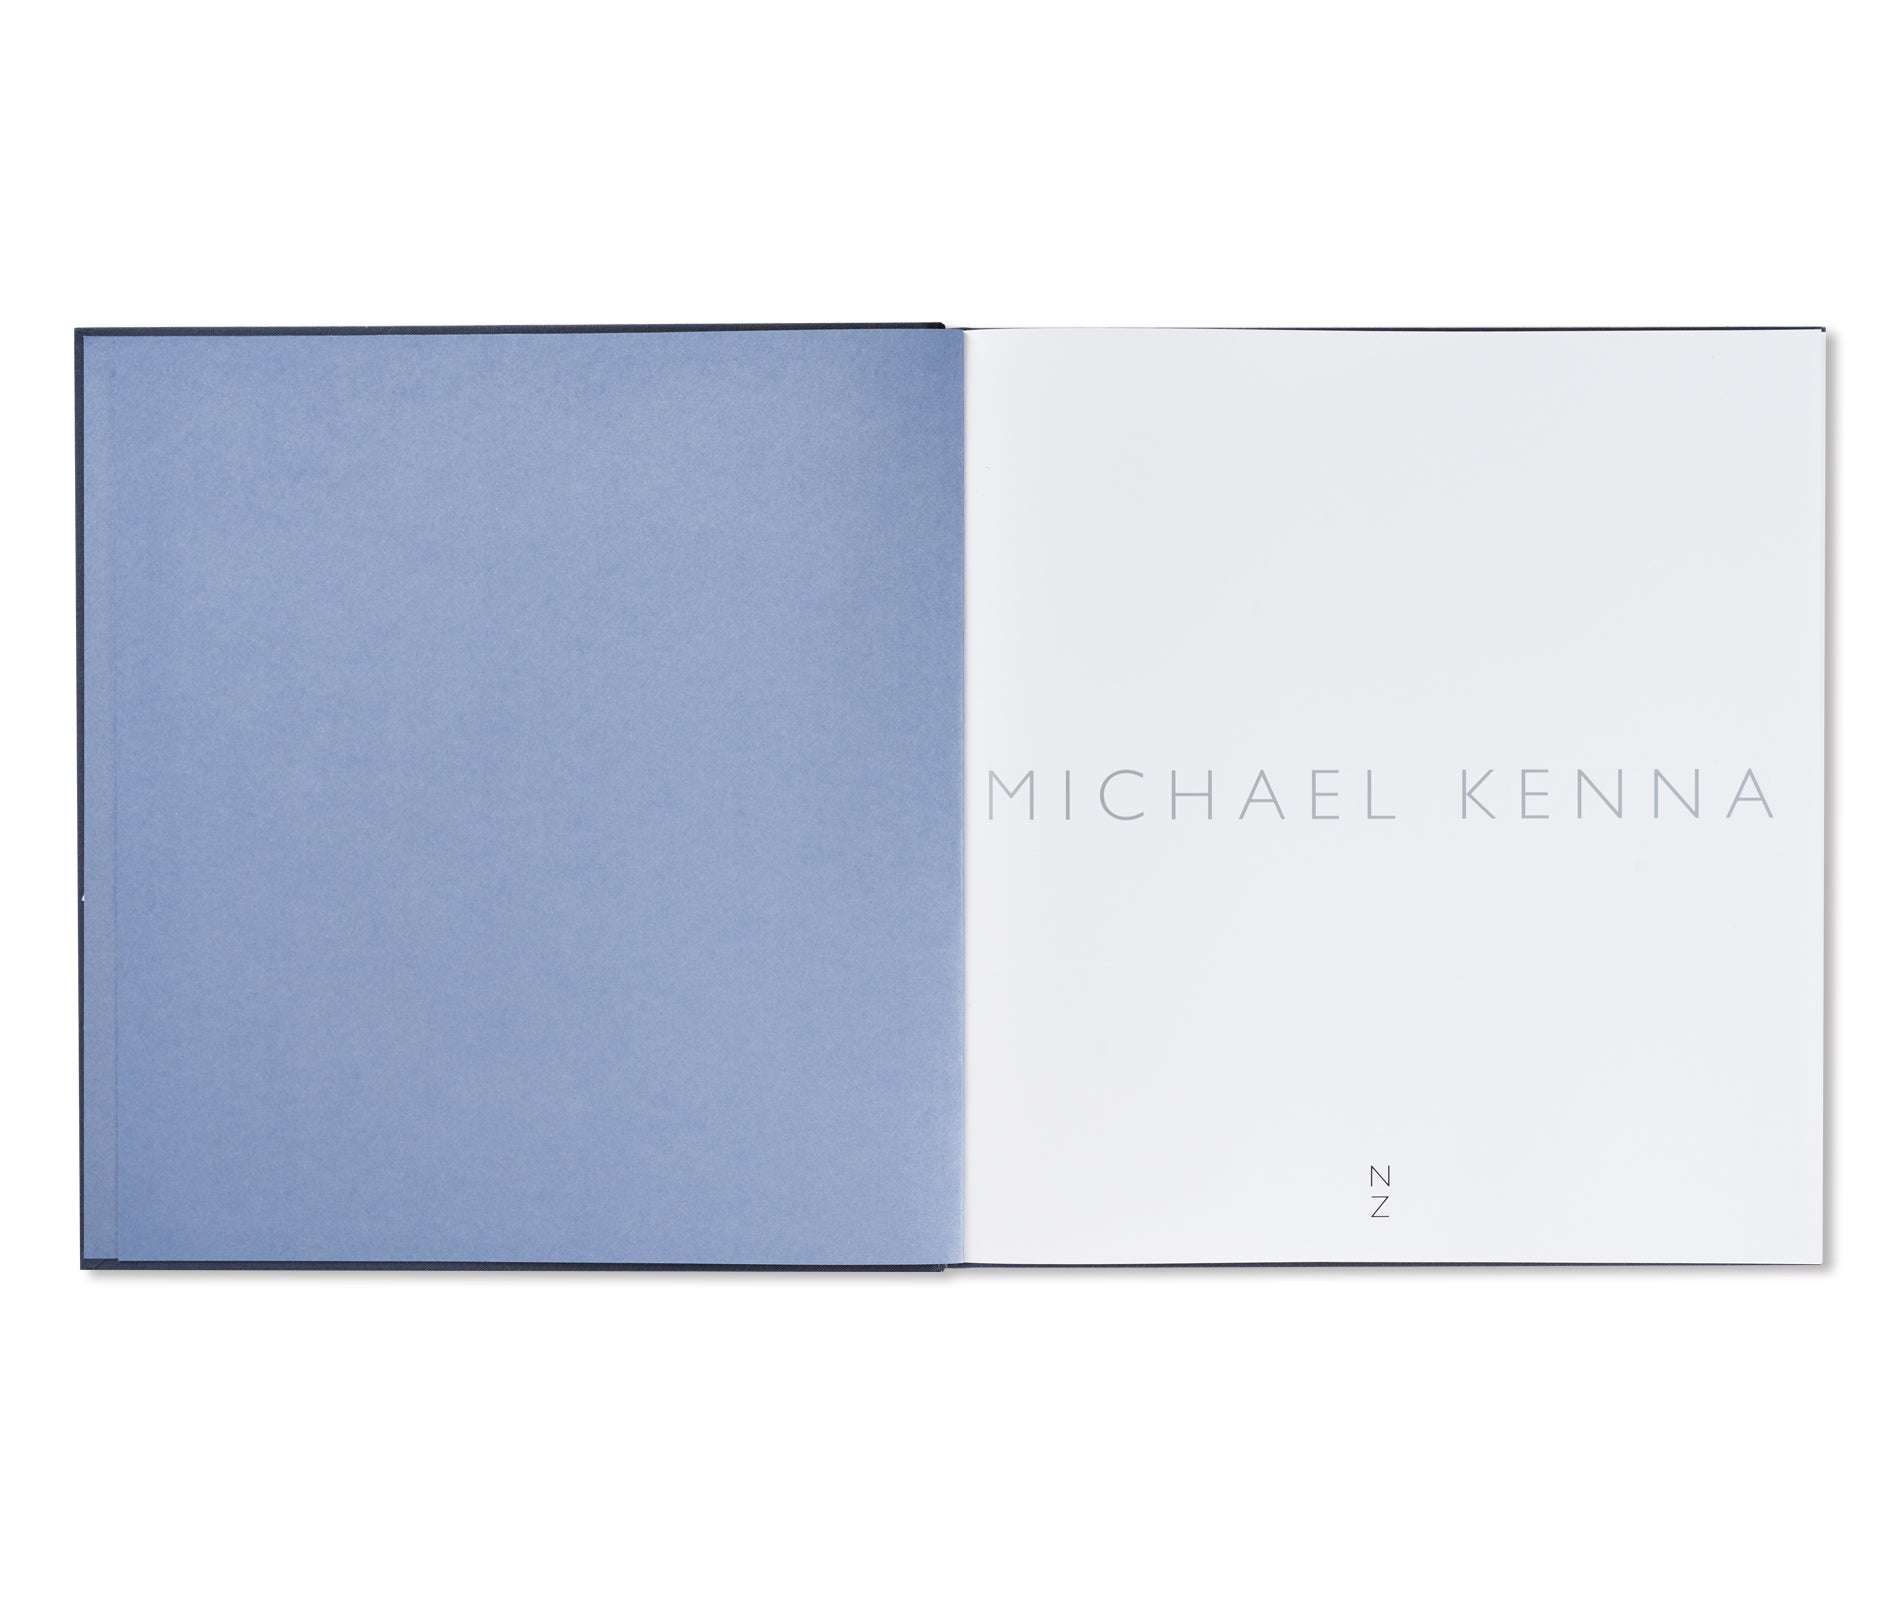 A TWENTY YEAR RETROSPECTIVE by Michael Kenna